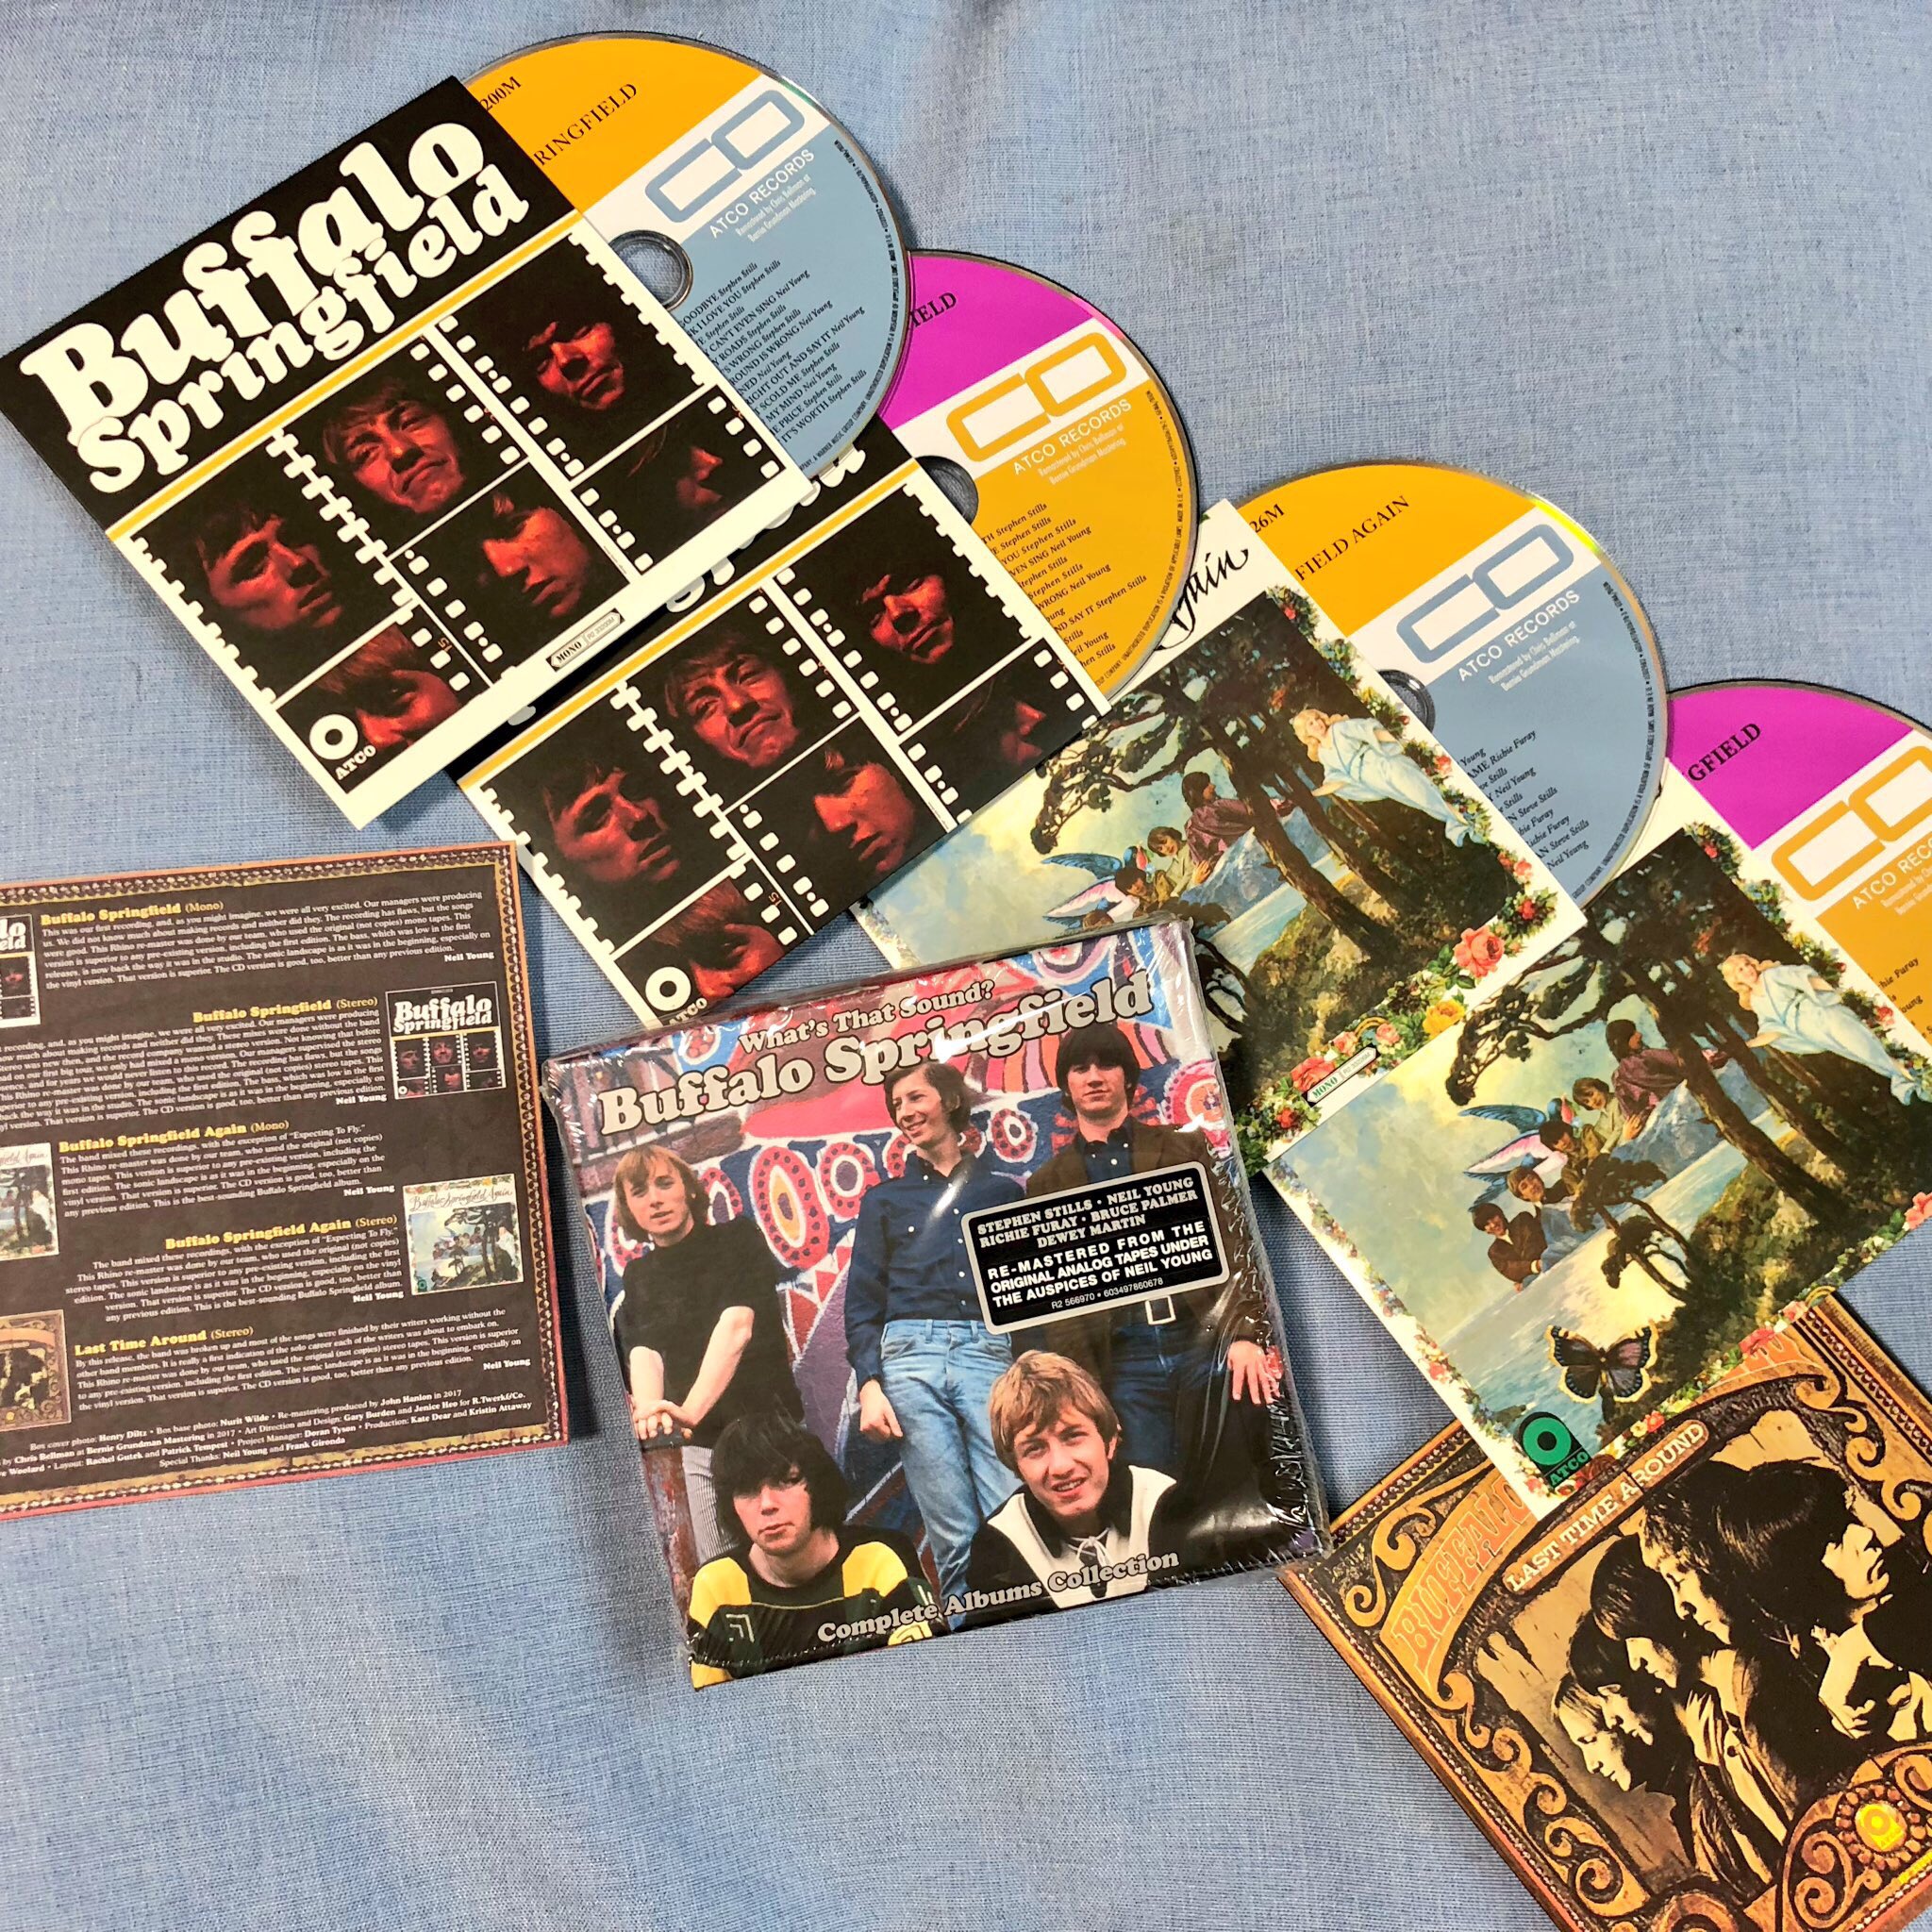 白土能之 on Twitter: "Buffalo Springfield What's That Sound?: Complete Albums Collection (2018) remastered 5discs box set vinyl CD edition #buffalospringfield #stephenstills #neilyoung #richiefuray #brucepalmer #deweymartin #jimmessina #atcorecords ...